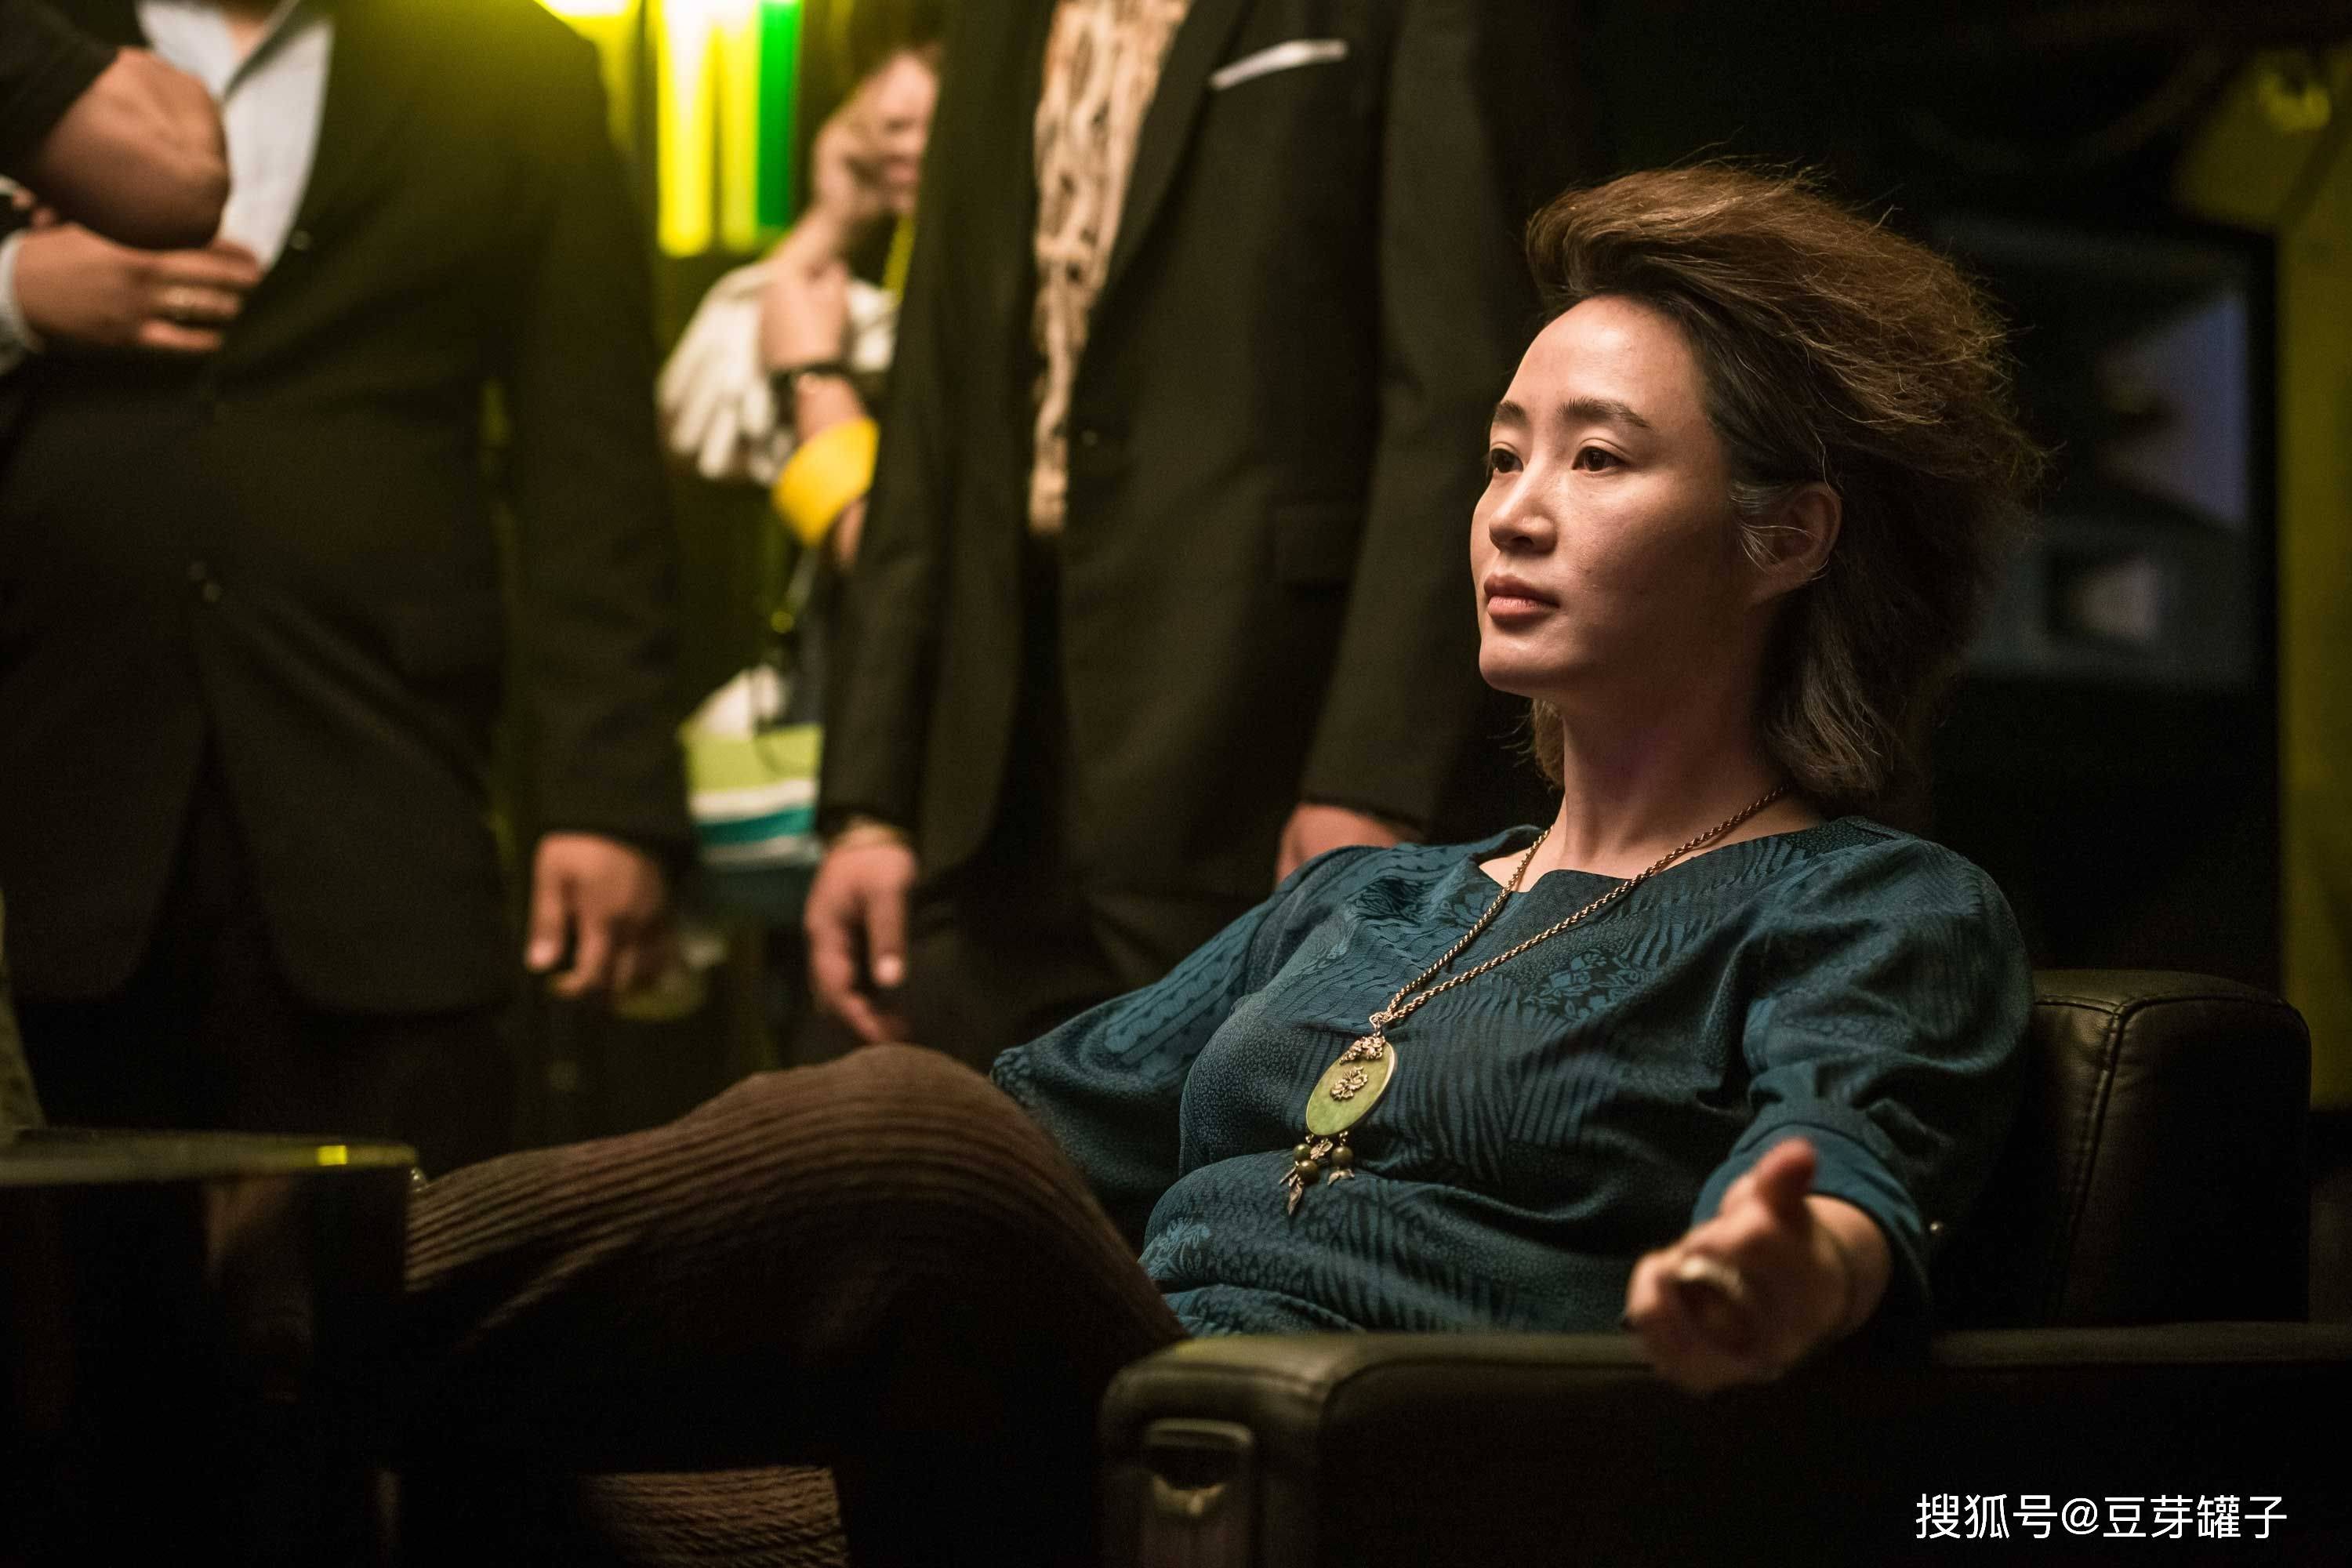 67《中国城》,女孩变成杀人武器,挑战韩国电影暴力尺度极限